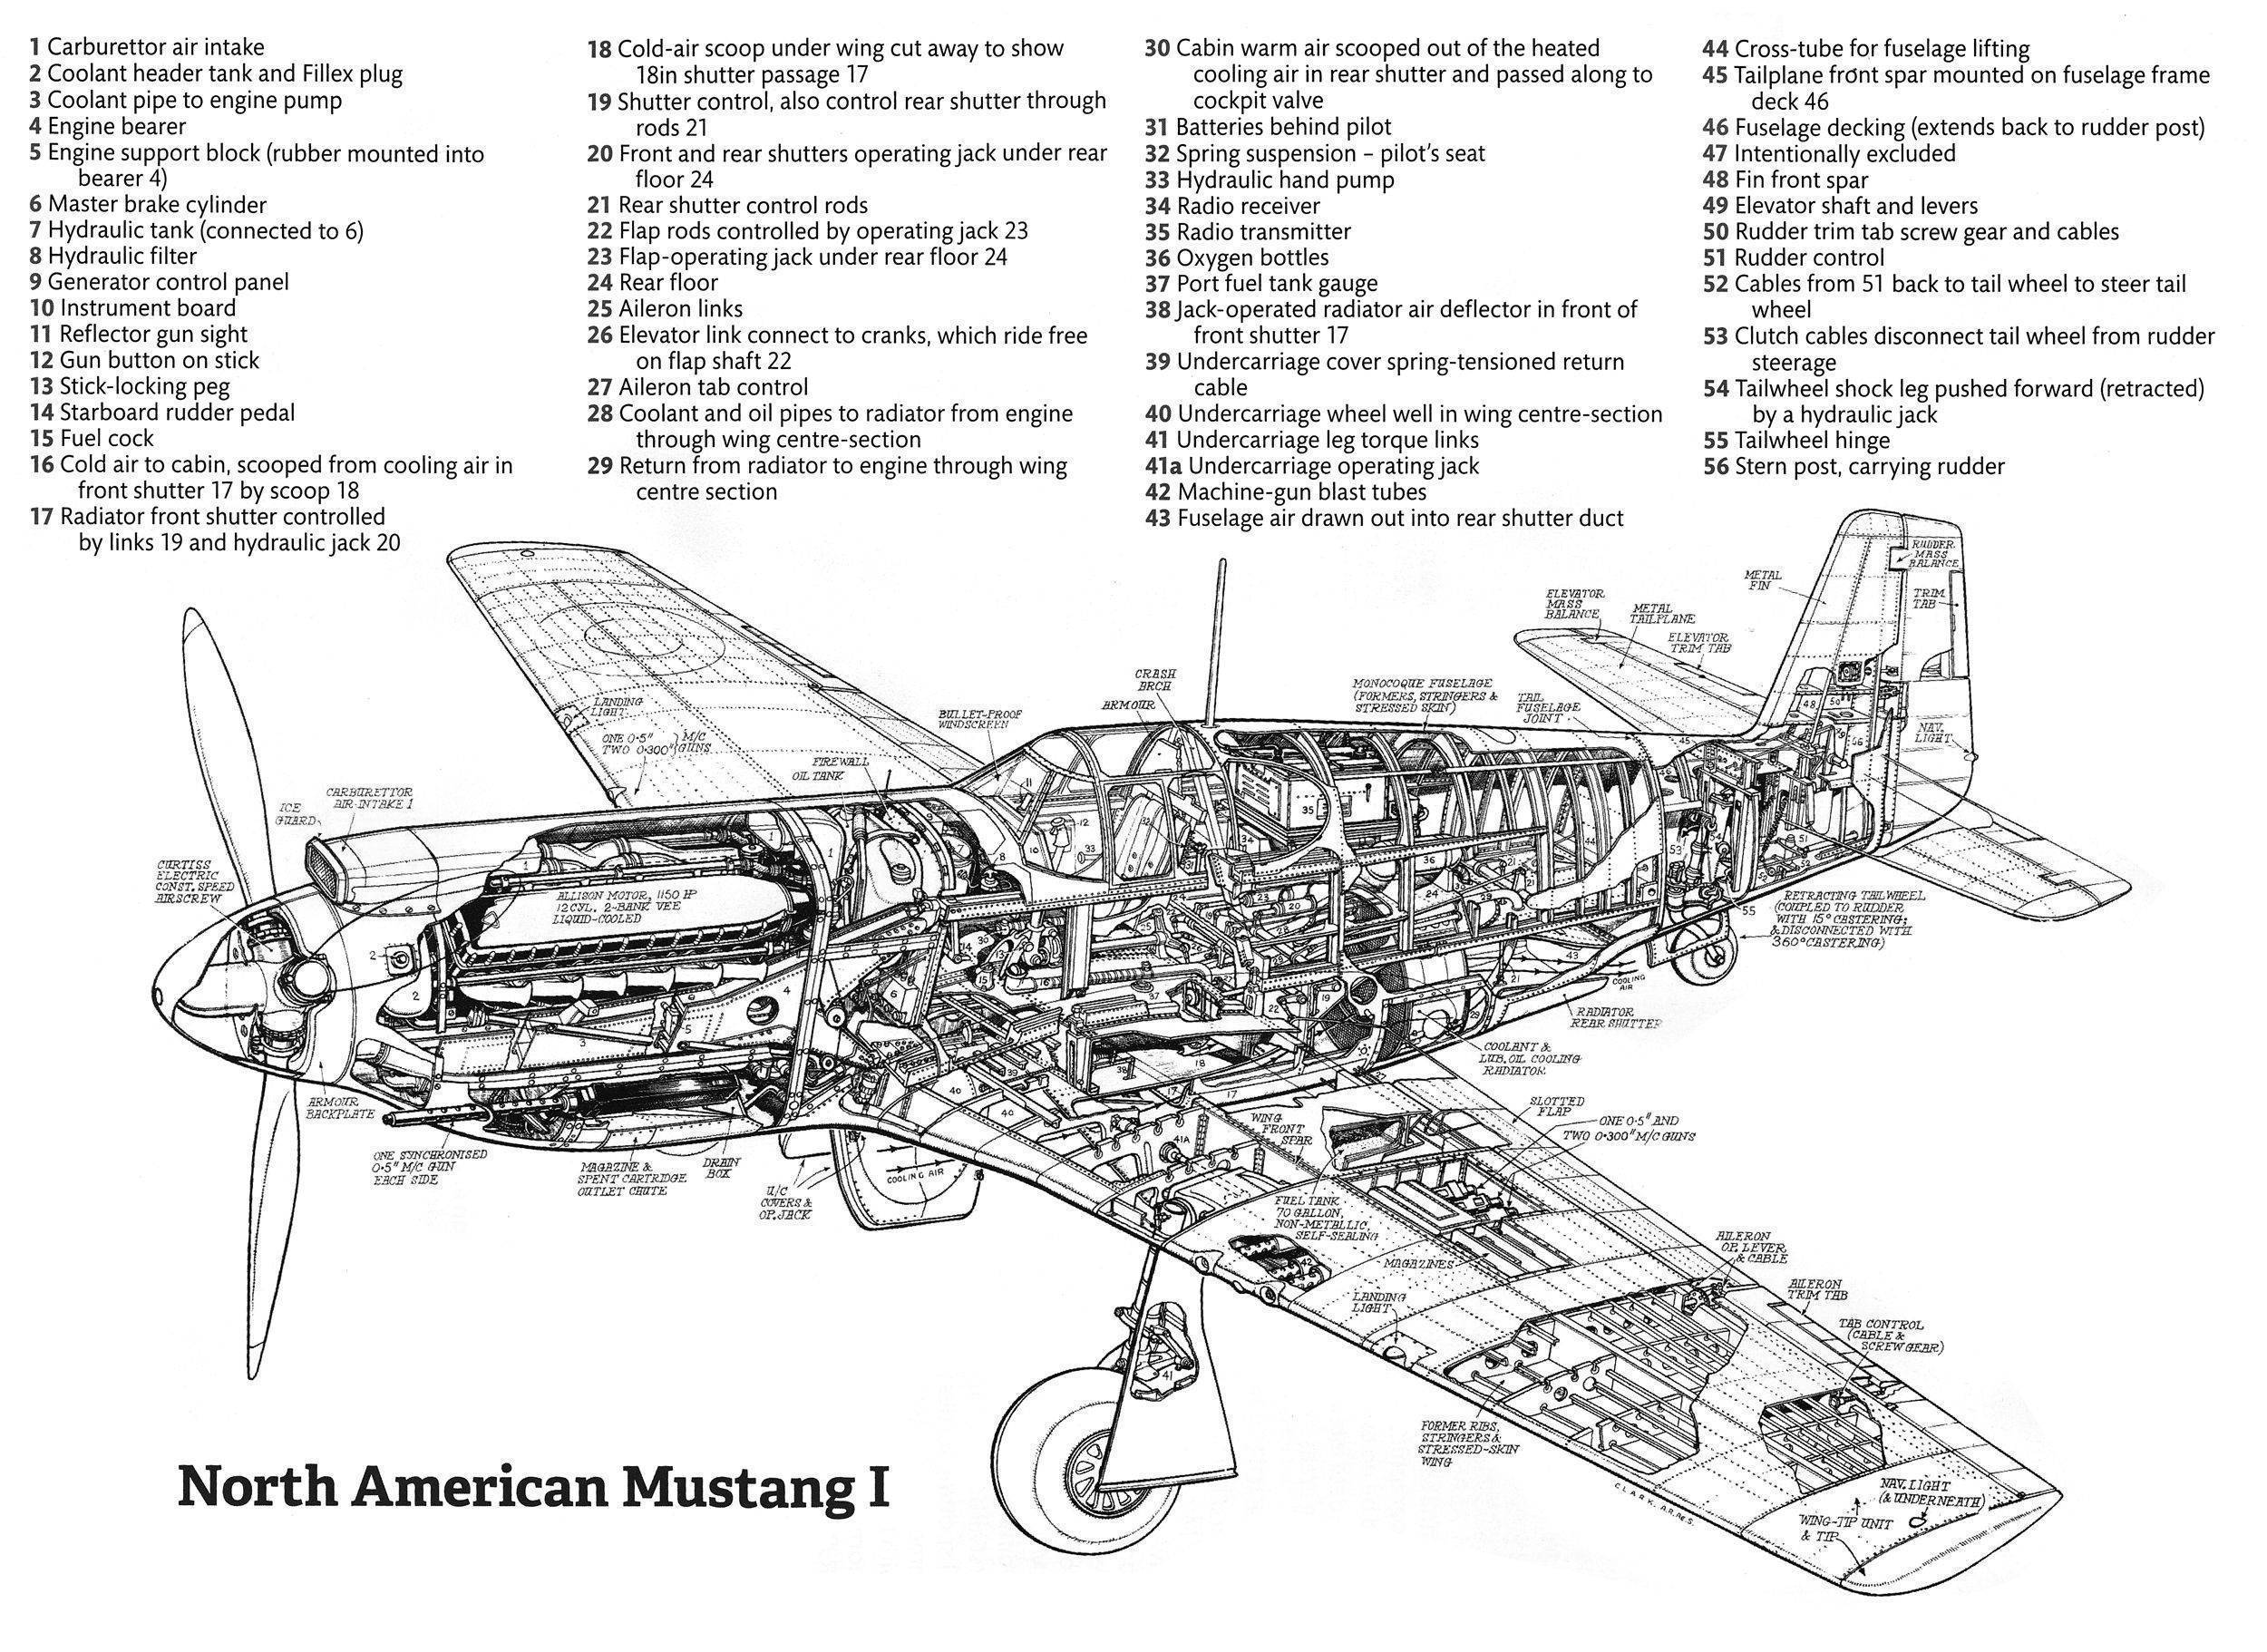 Истребители р-51 "мустанг" на аэродроме майнсфилд в сша [1] | военный альбом